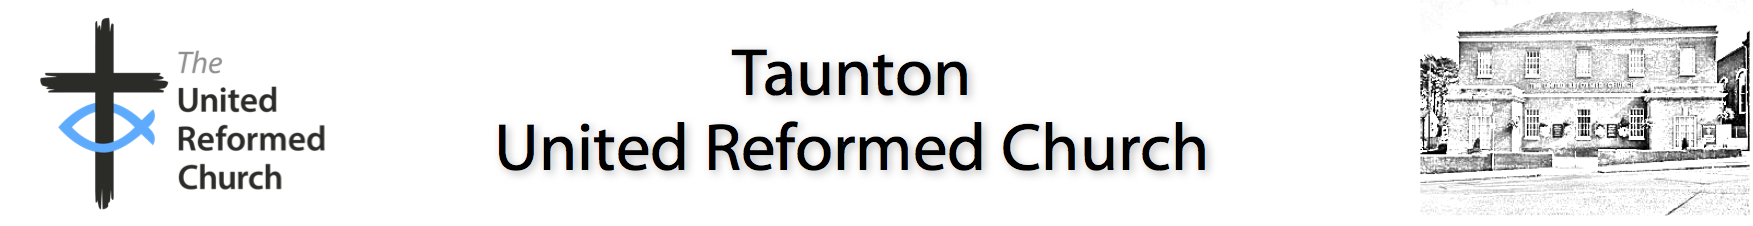 Taunton United Reformed Church